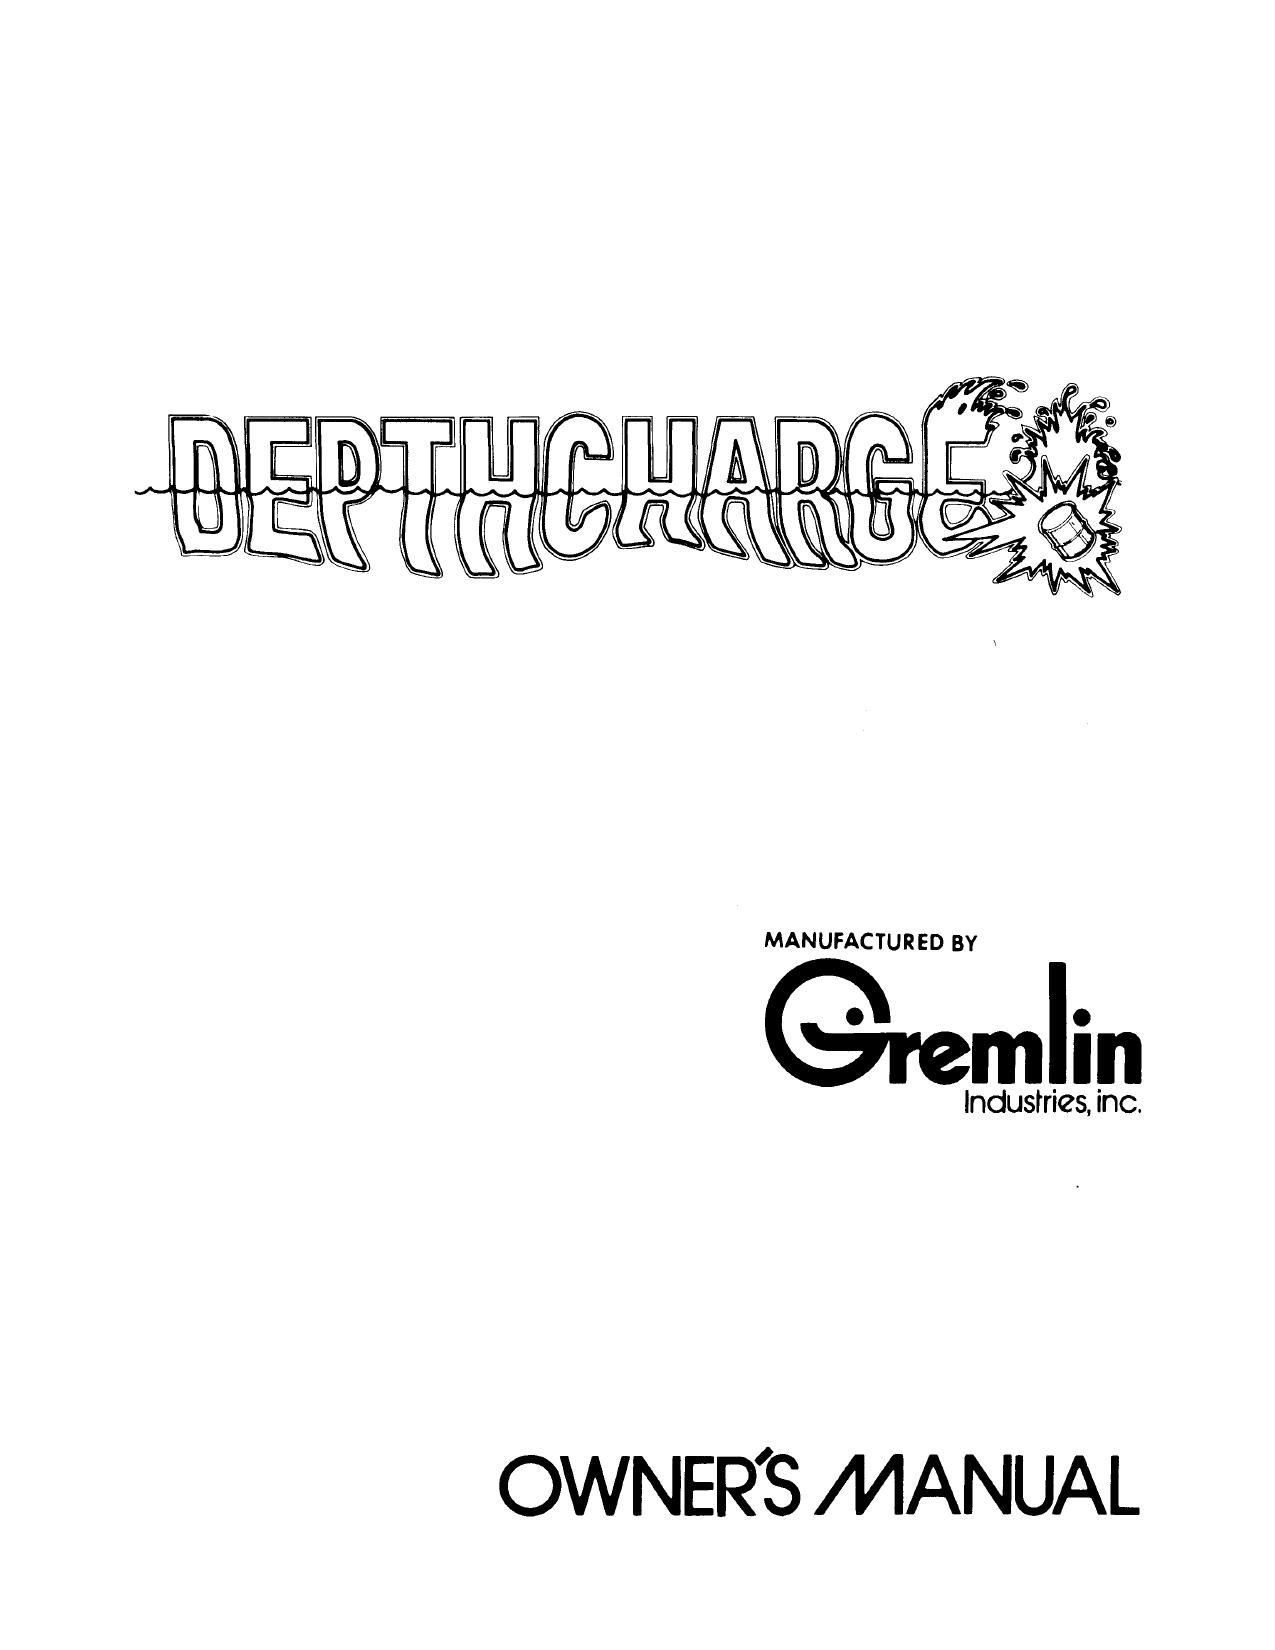 DepthCharge Manual